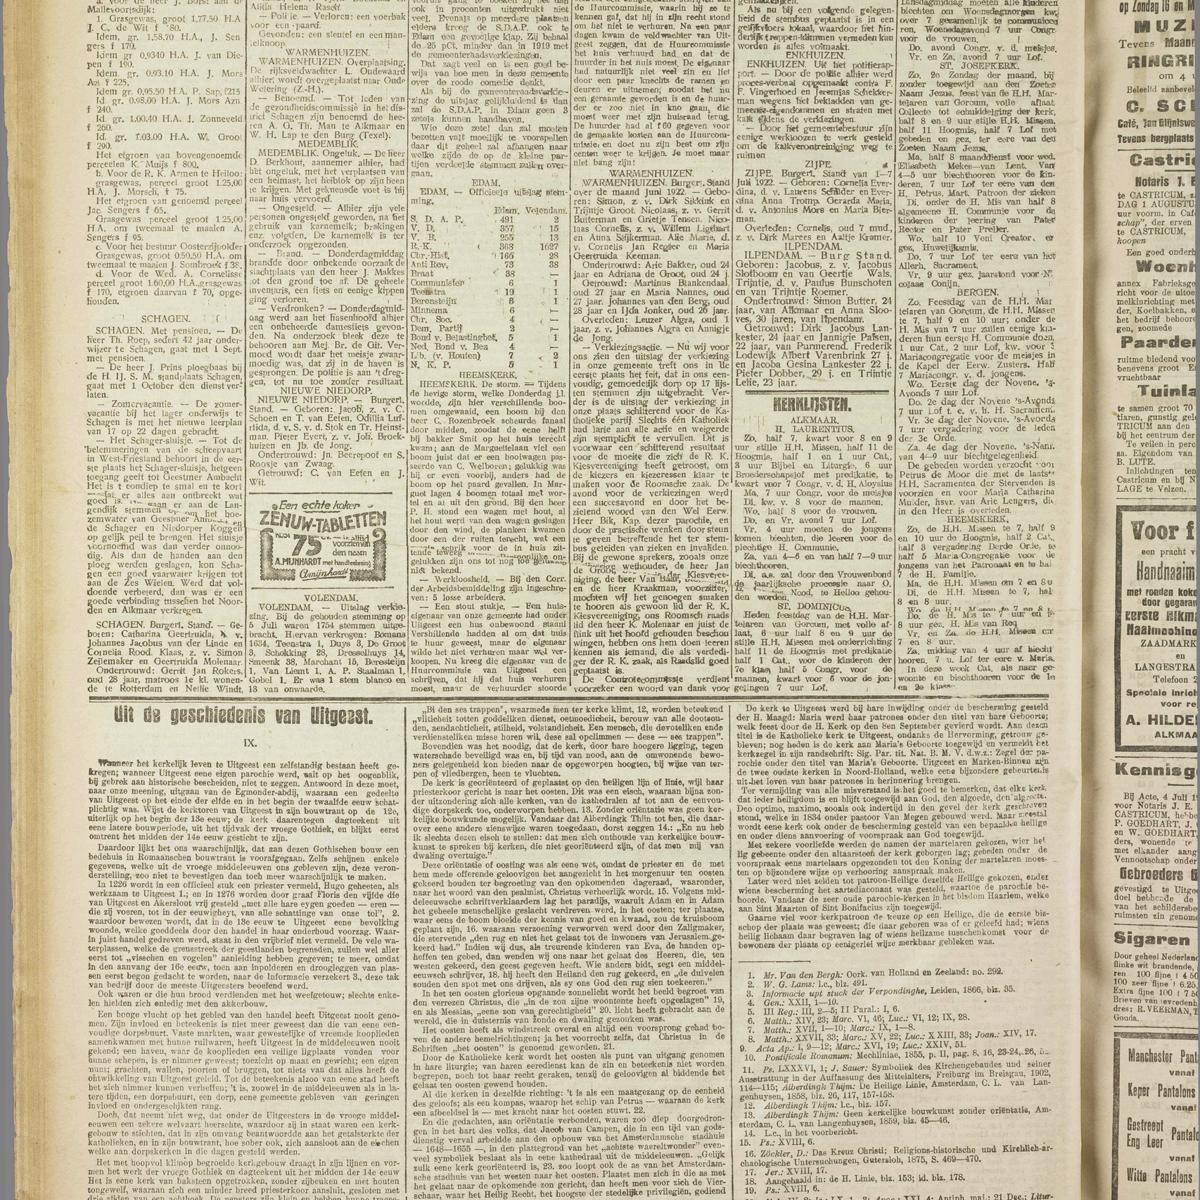 Noord-Hollandsch Dagblad, 1922-07-08, page 6